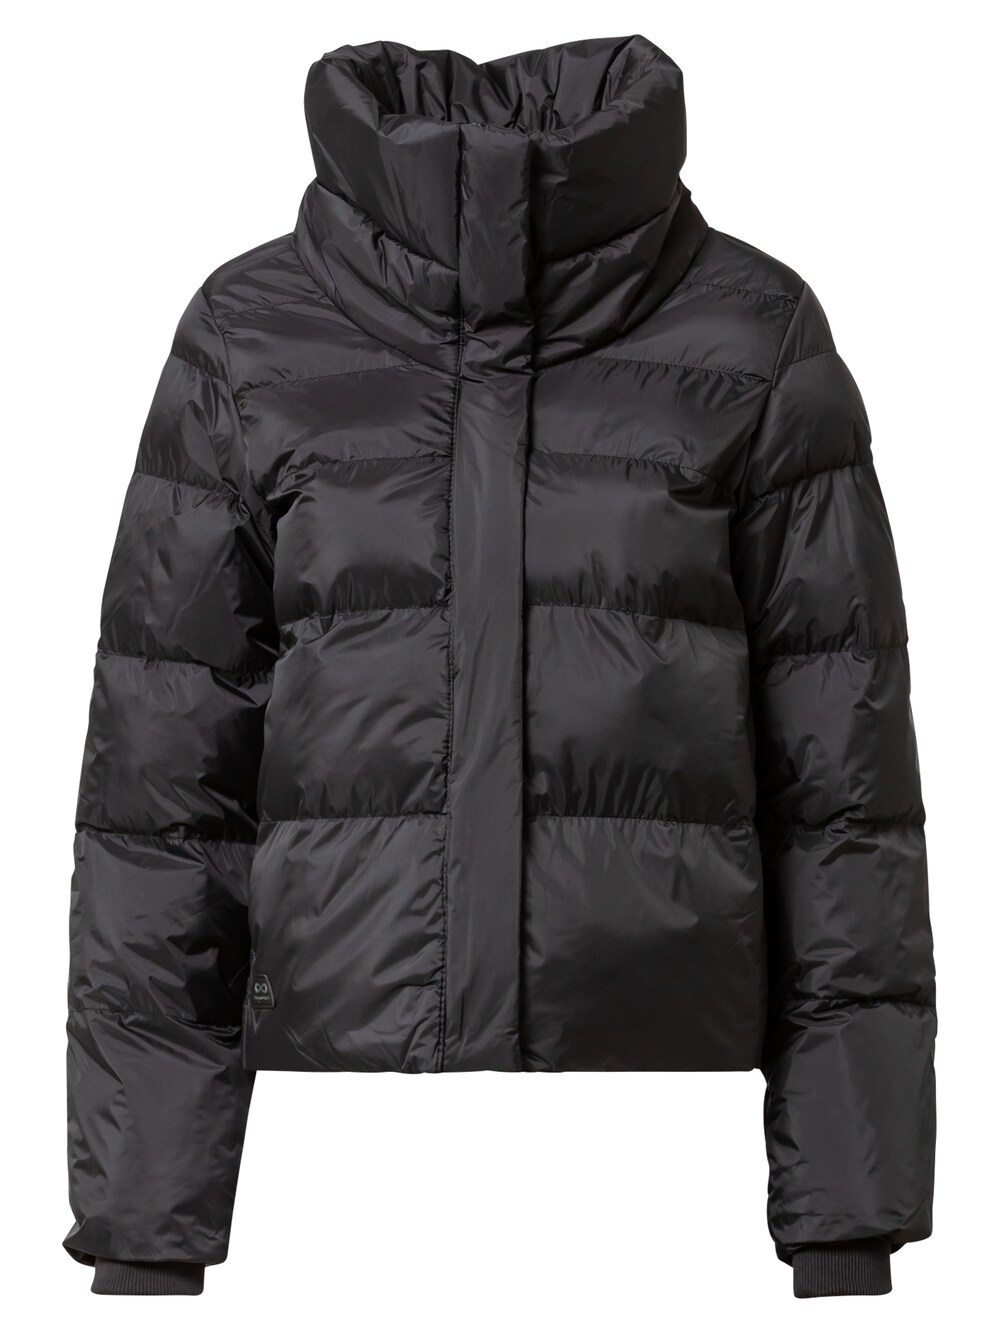 Межсезонная куртка Ragwear LUNIS, черный межсезонная куртка ragwear margge оливковый